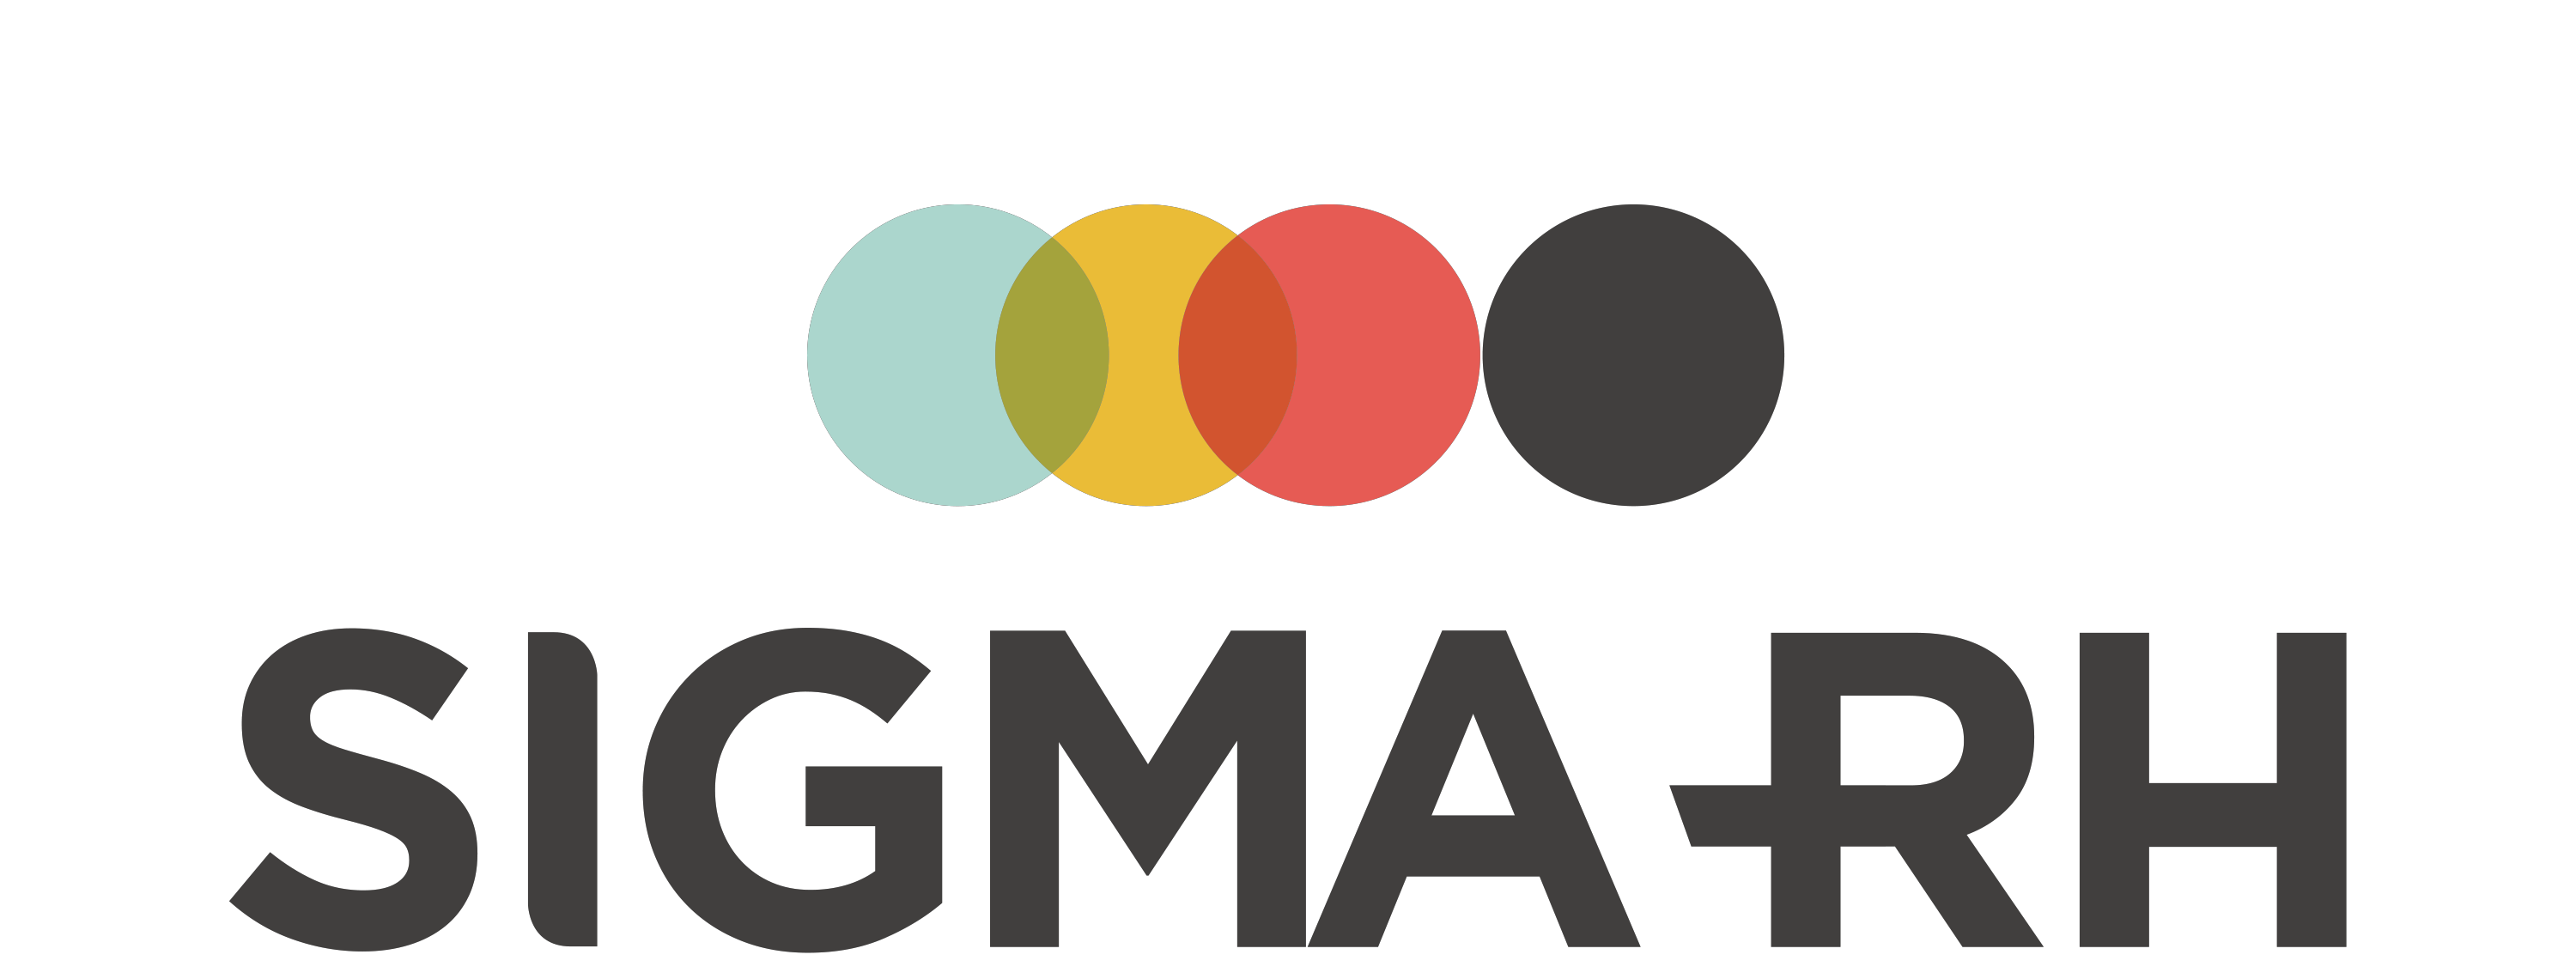 Sigma RH logo